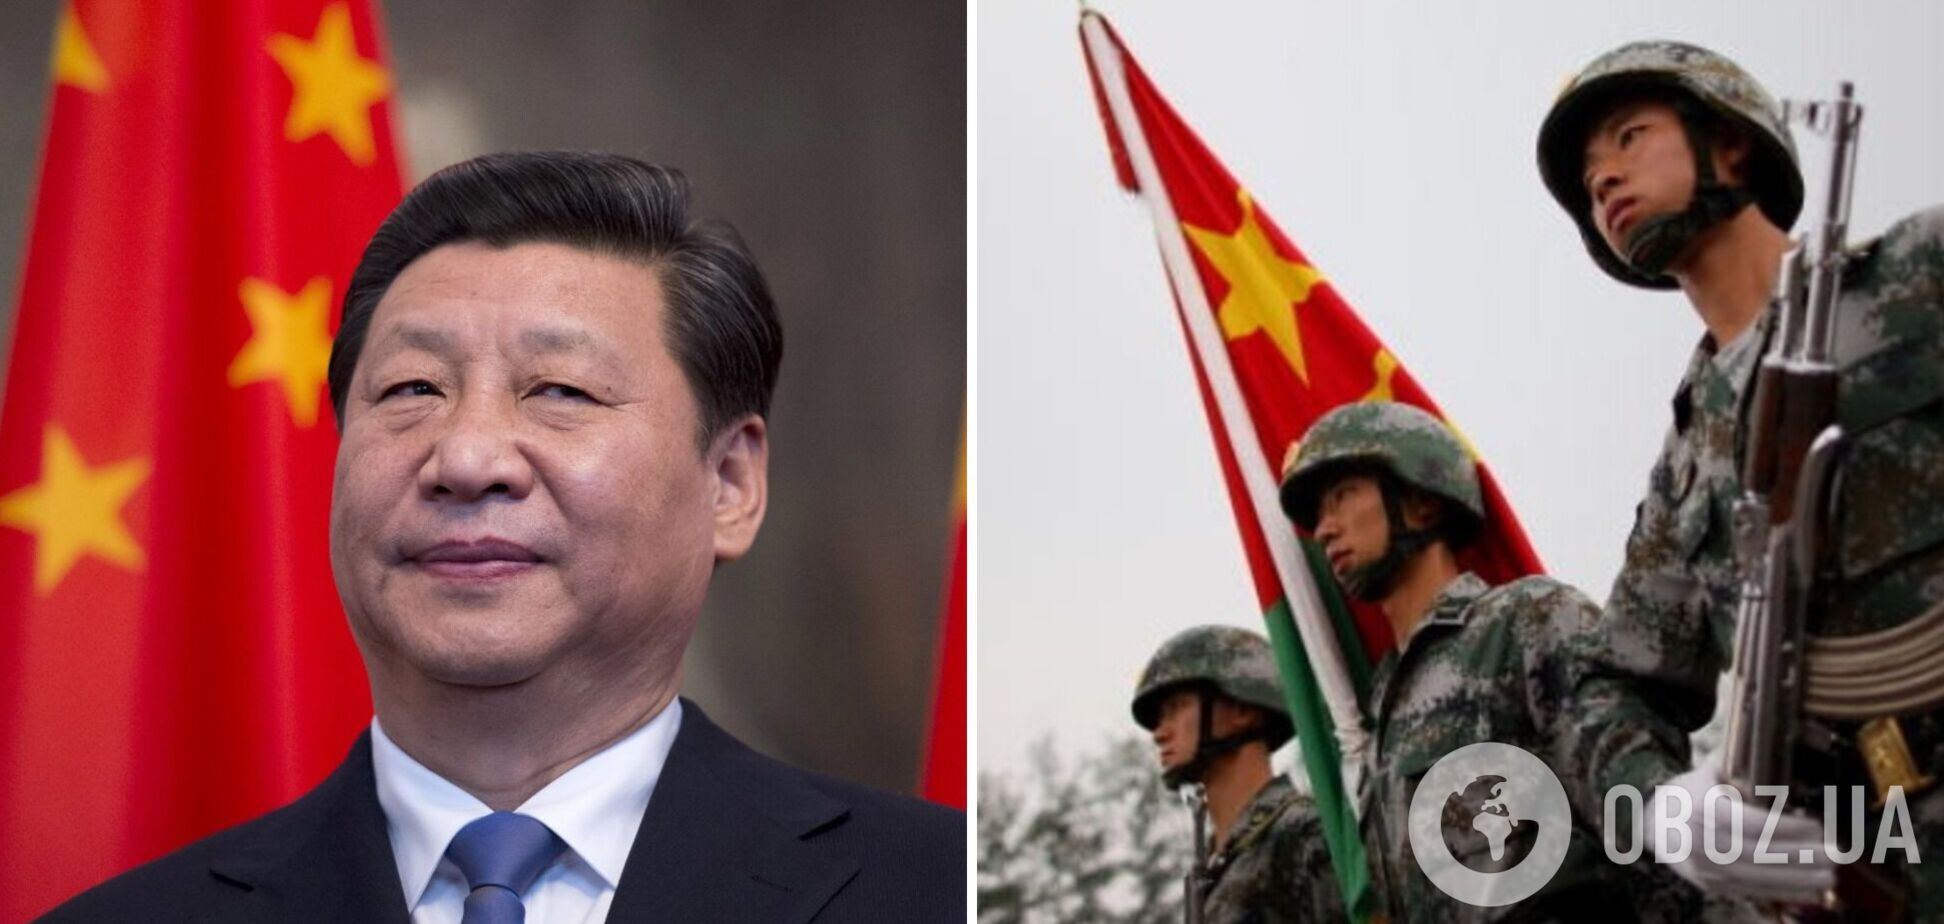 В мережі заявили про арешт Сі Цзіньпіна та переворот у Китаї: жодних доказів цього немає